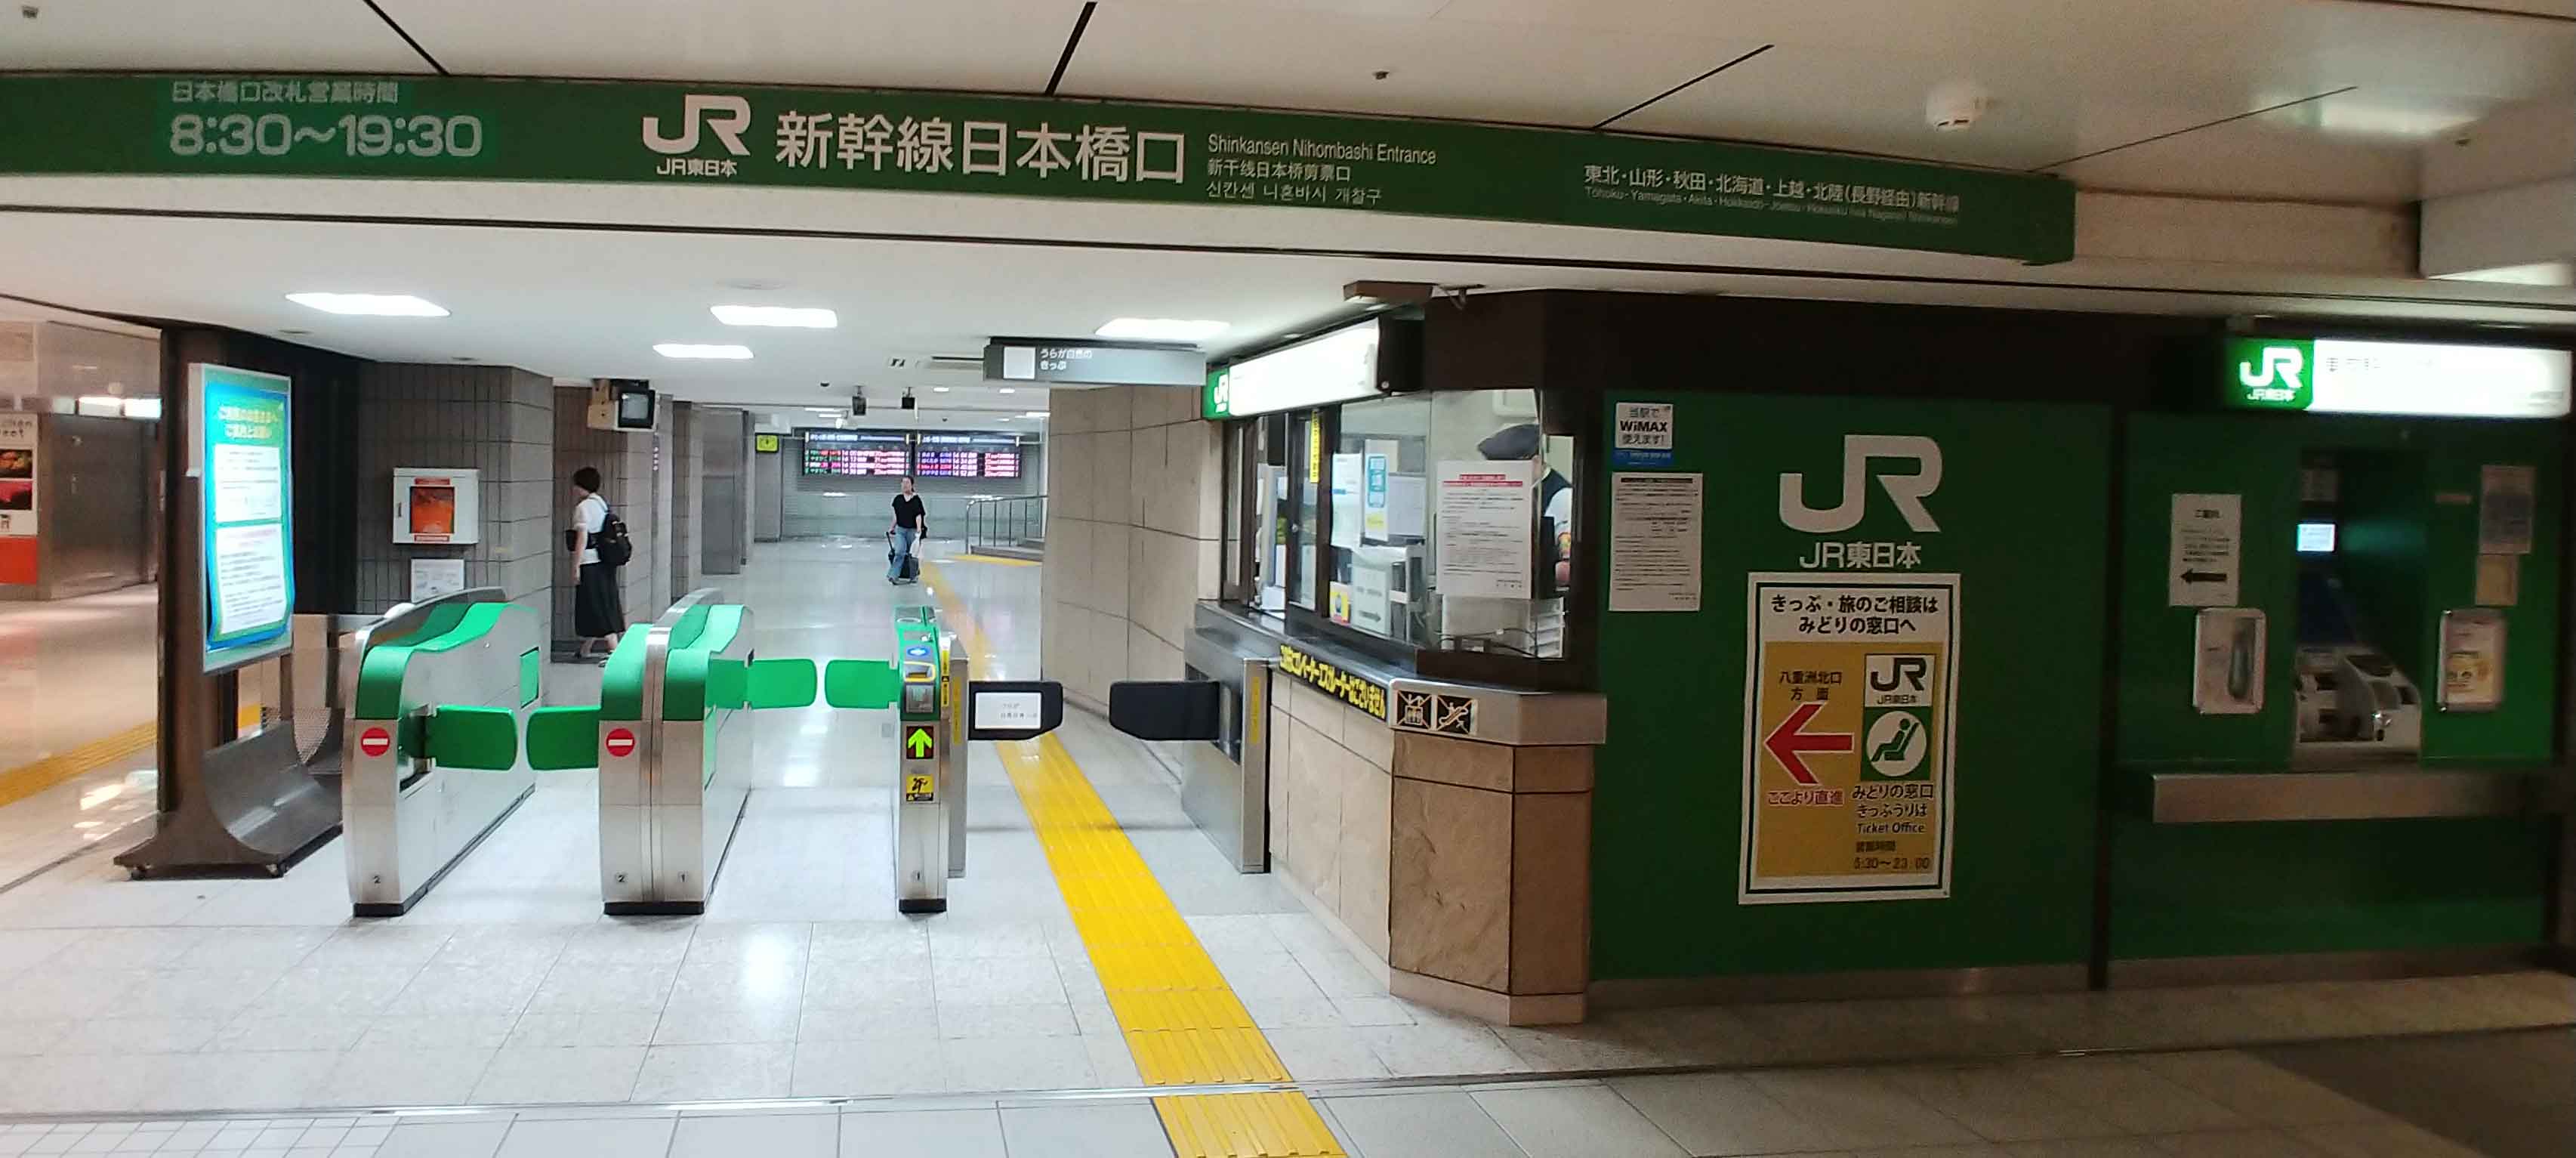 繁忙期の東京駅で新幹線のチケットを並ばずに買うコツ 東京スパイシー